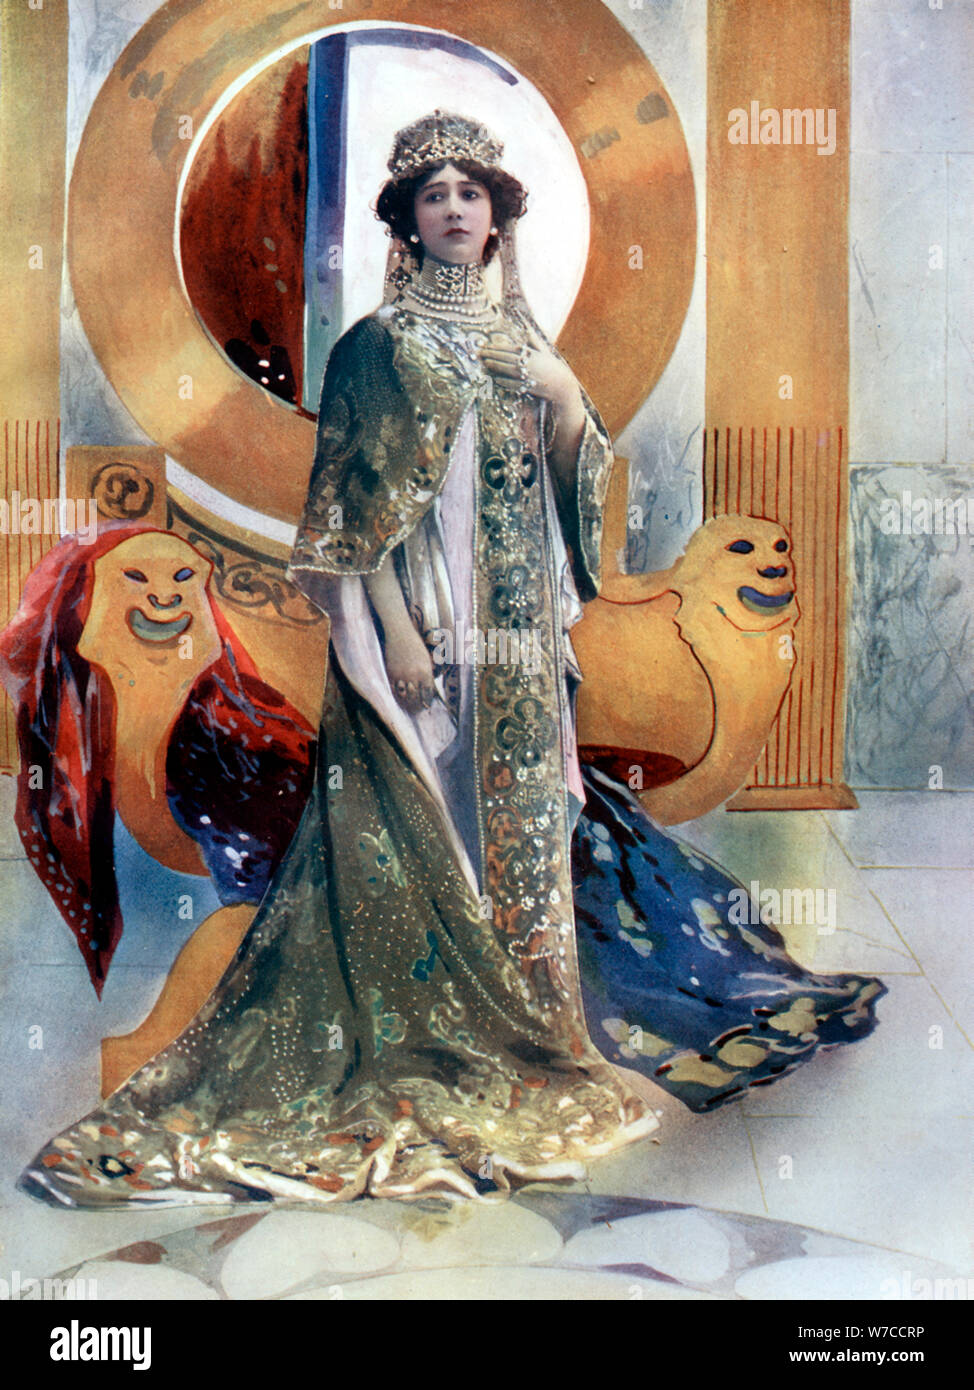 Madame Otero in L'Imperatrice, c1902.Artist: Rautlinger Stock Photo